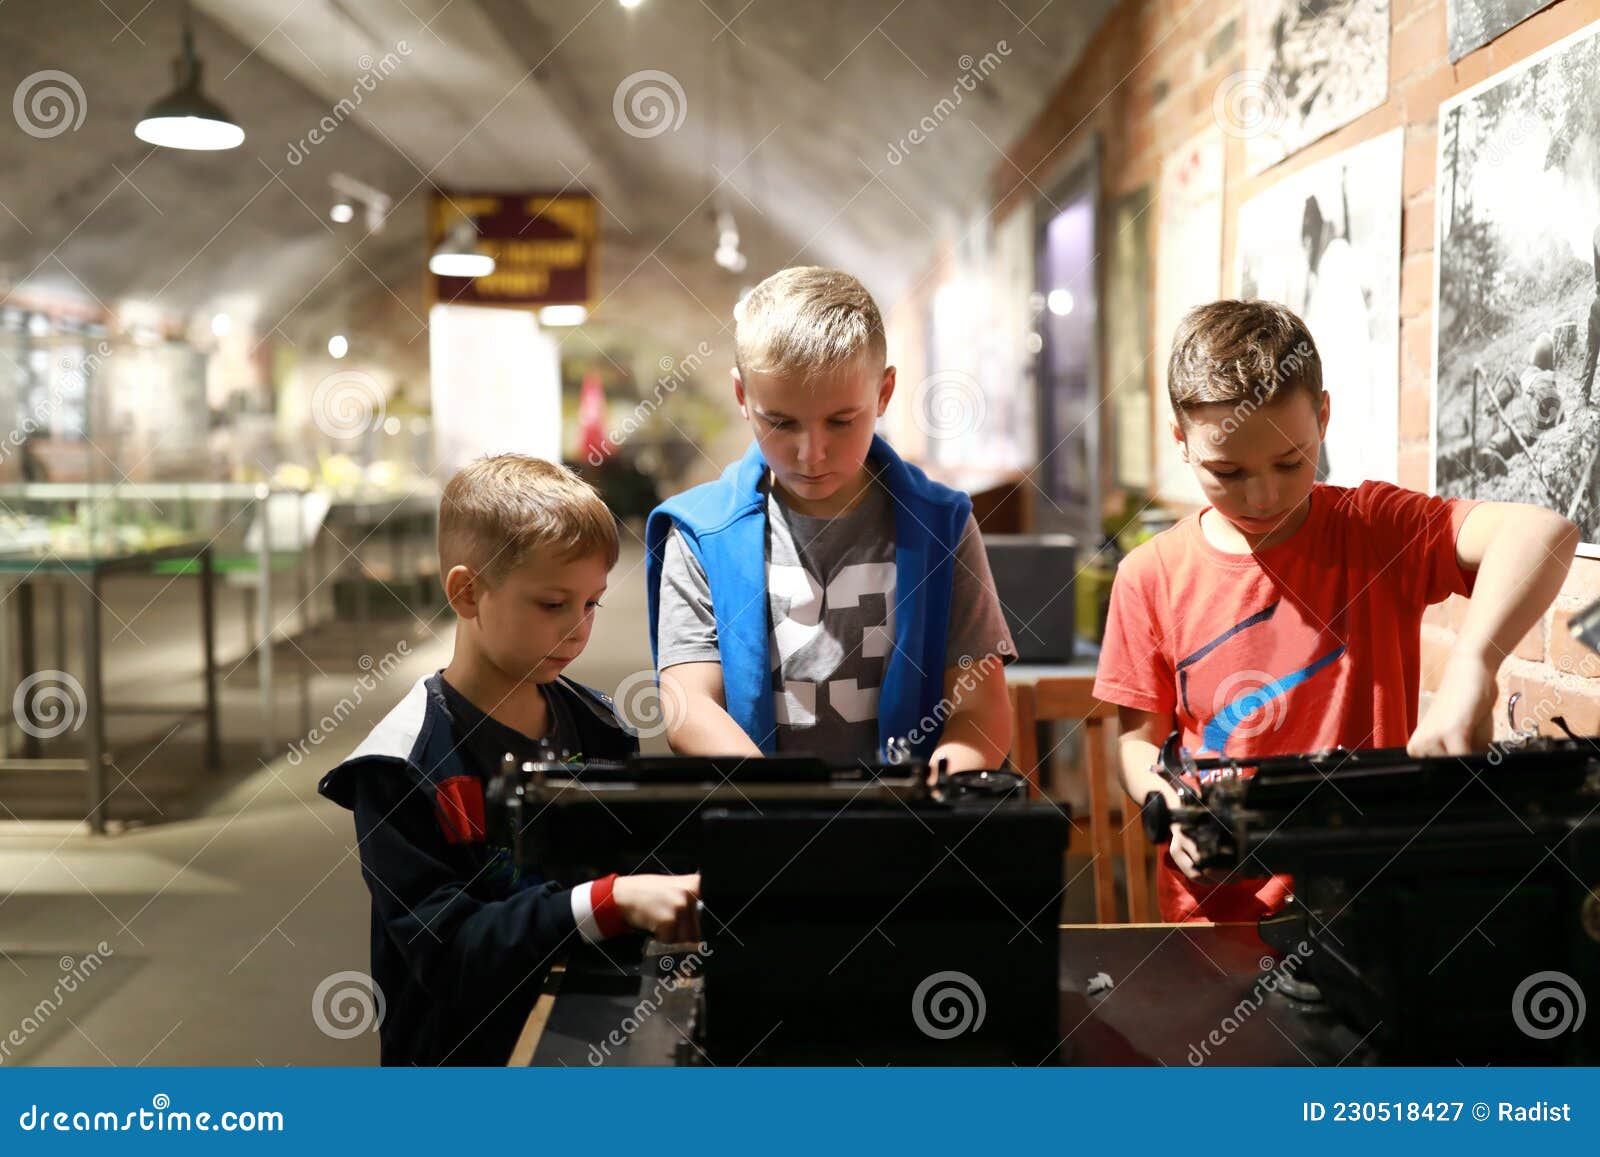 Um menino está jogando uma máquina de escrever em um fundo